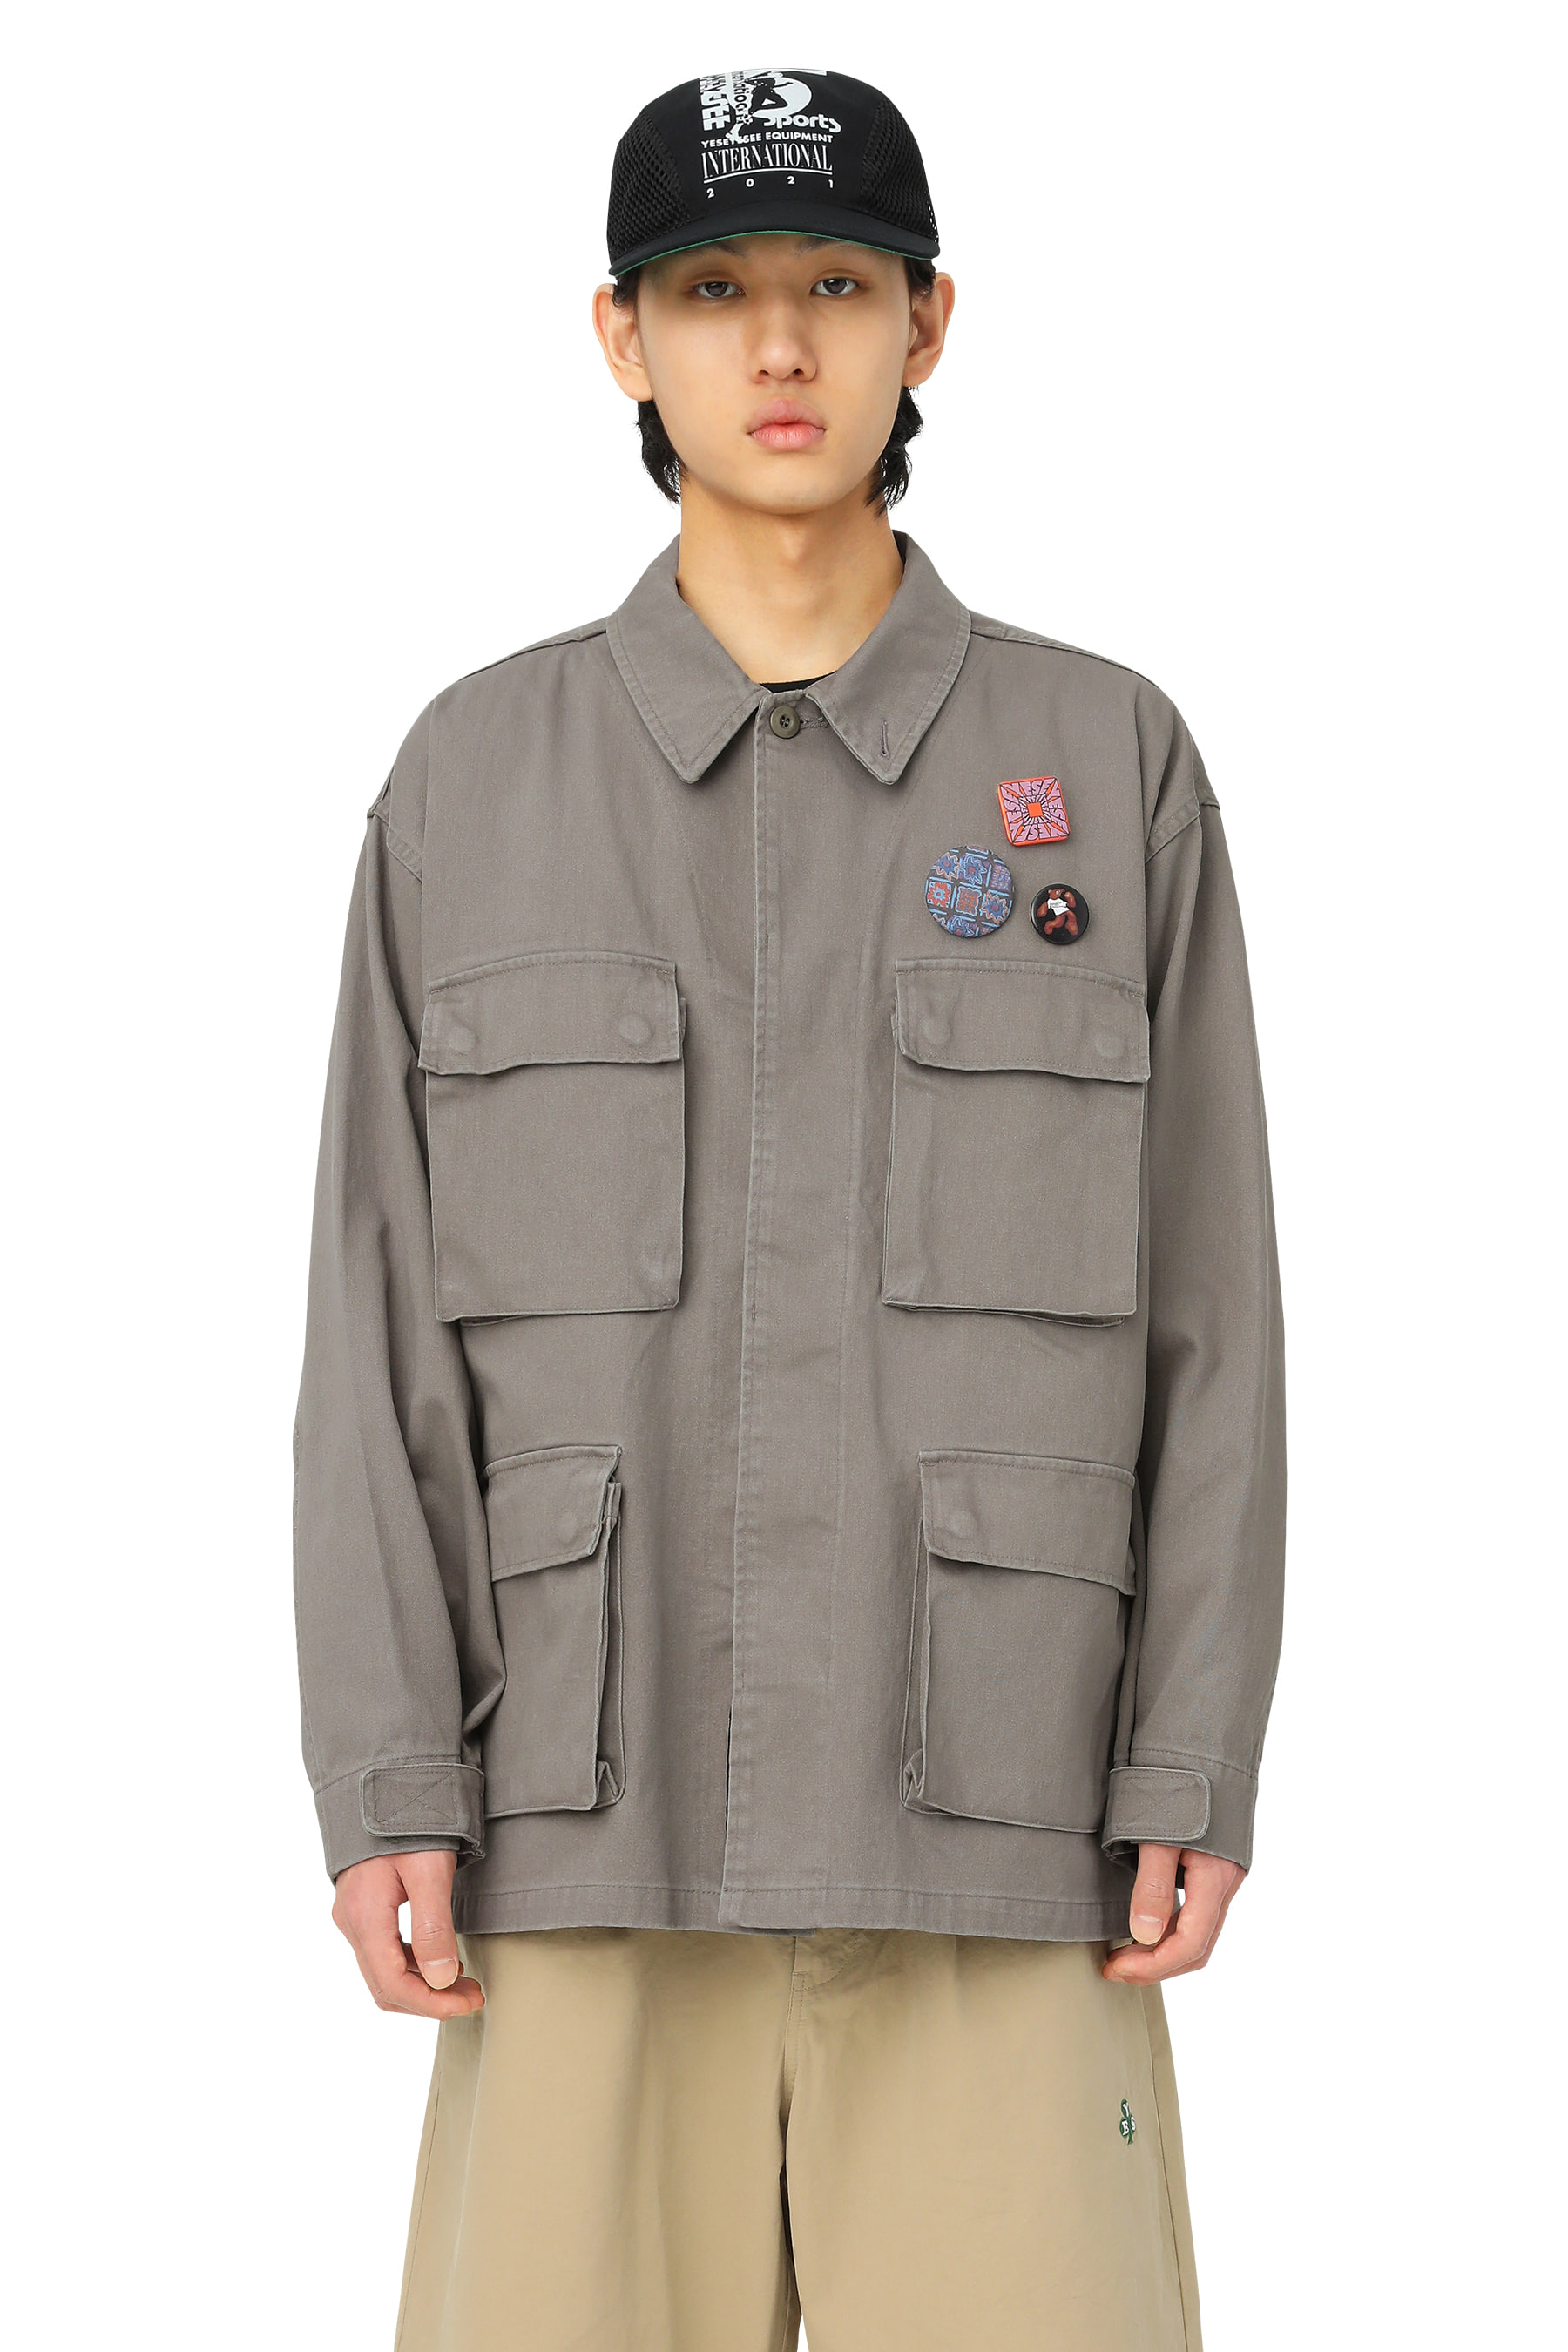 Y.E.S BDU Jacket Grey